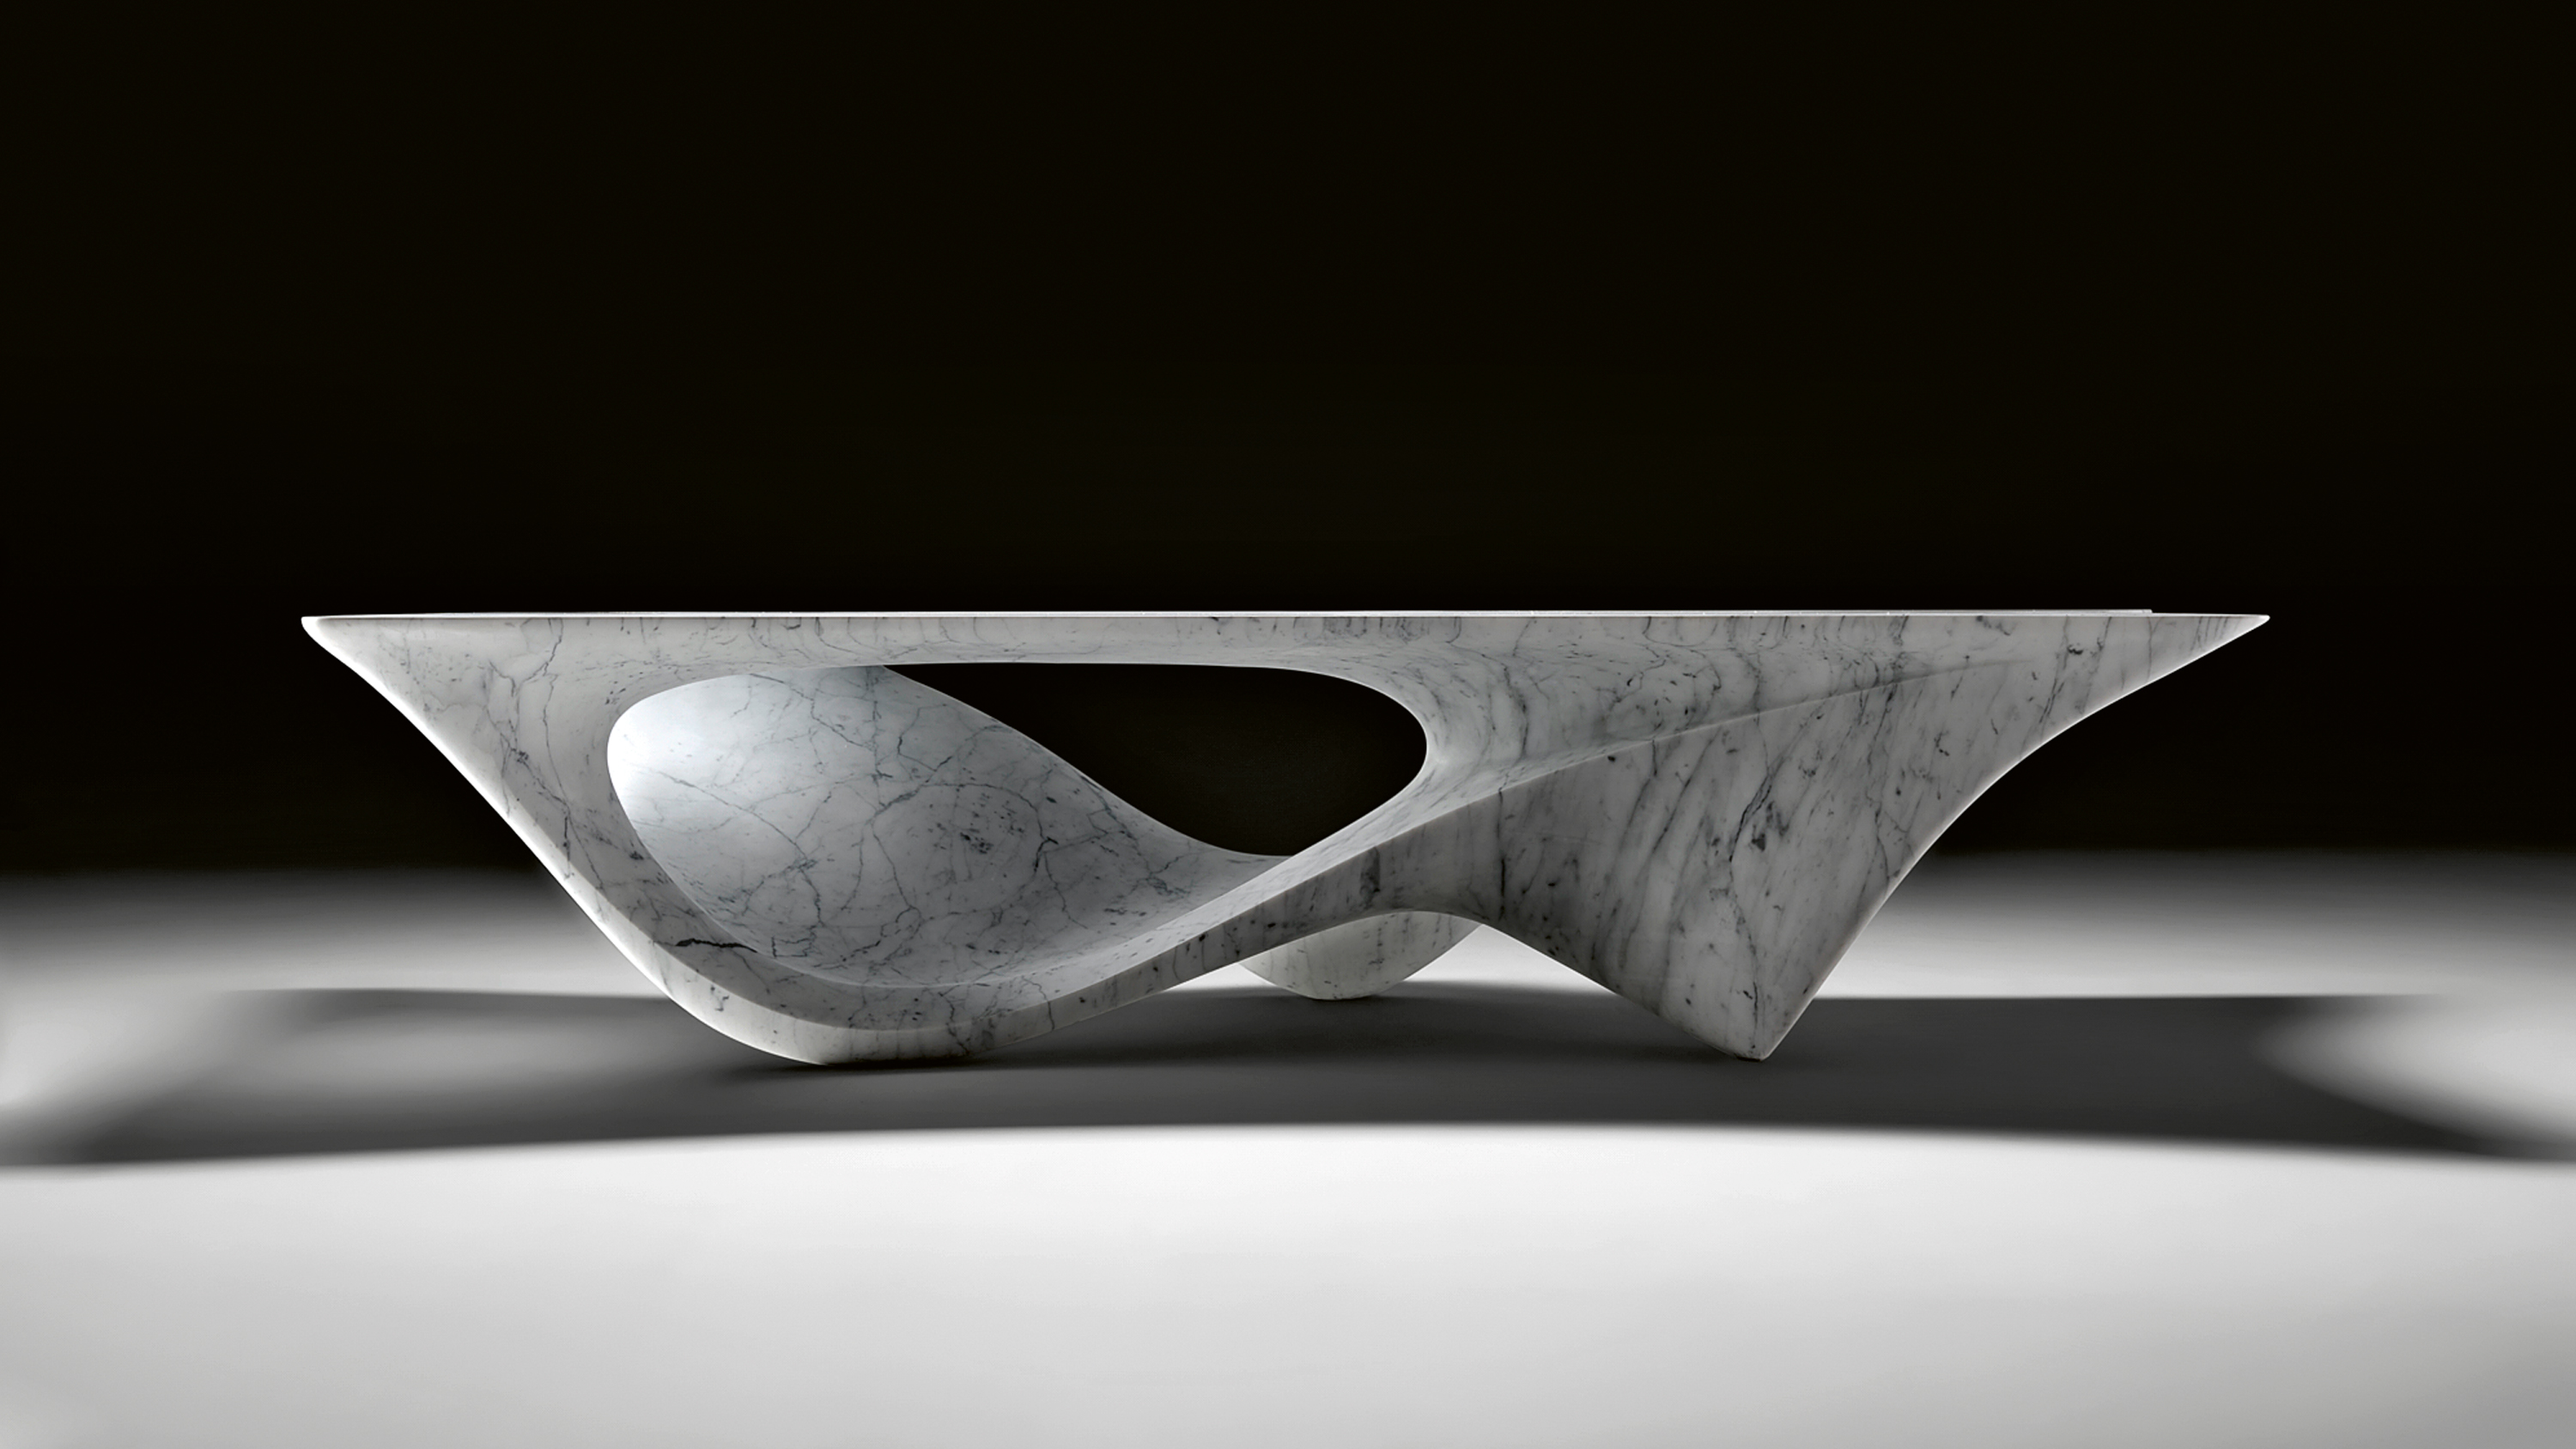 Colección Erosion de Zaha Hadid Architects